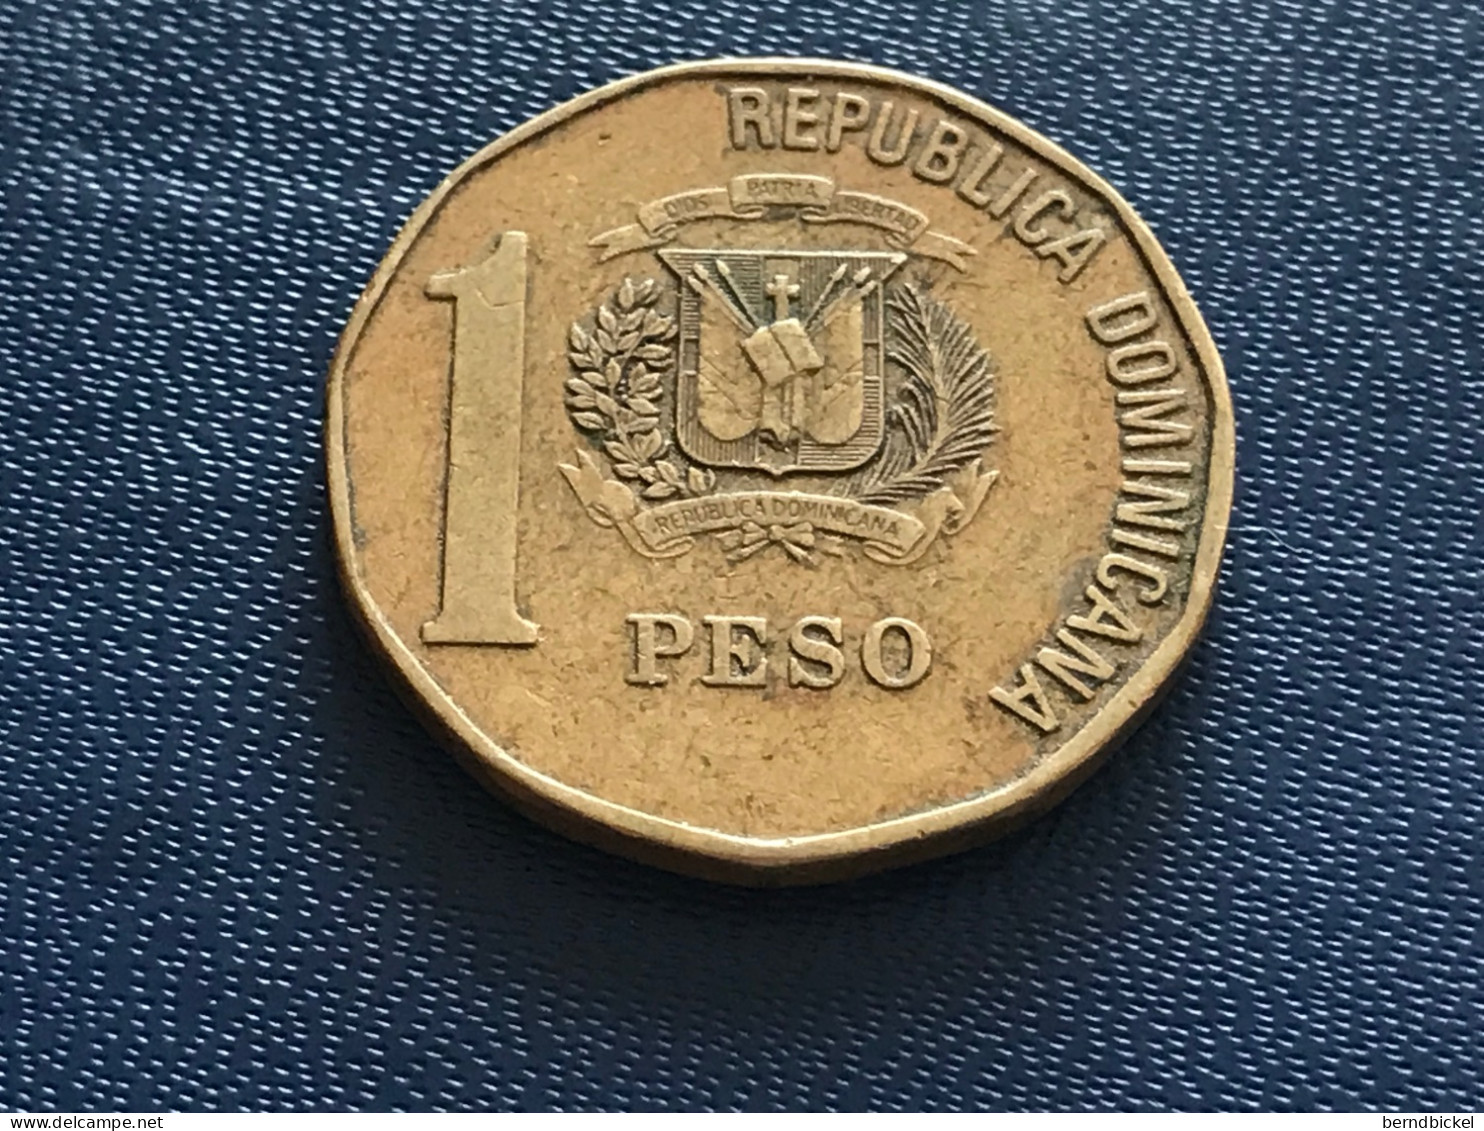 Münze Münzen Umlaufmünze Dominikanische Republik 1 Peso 2005 - Dominicaanse Republiek